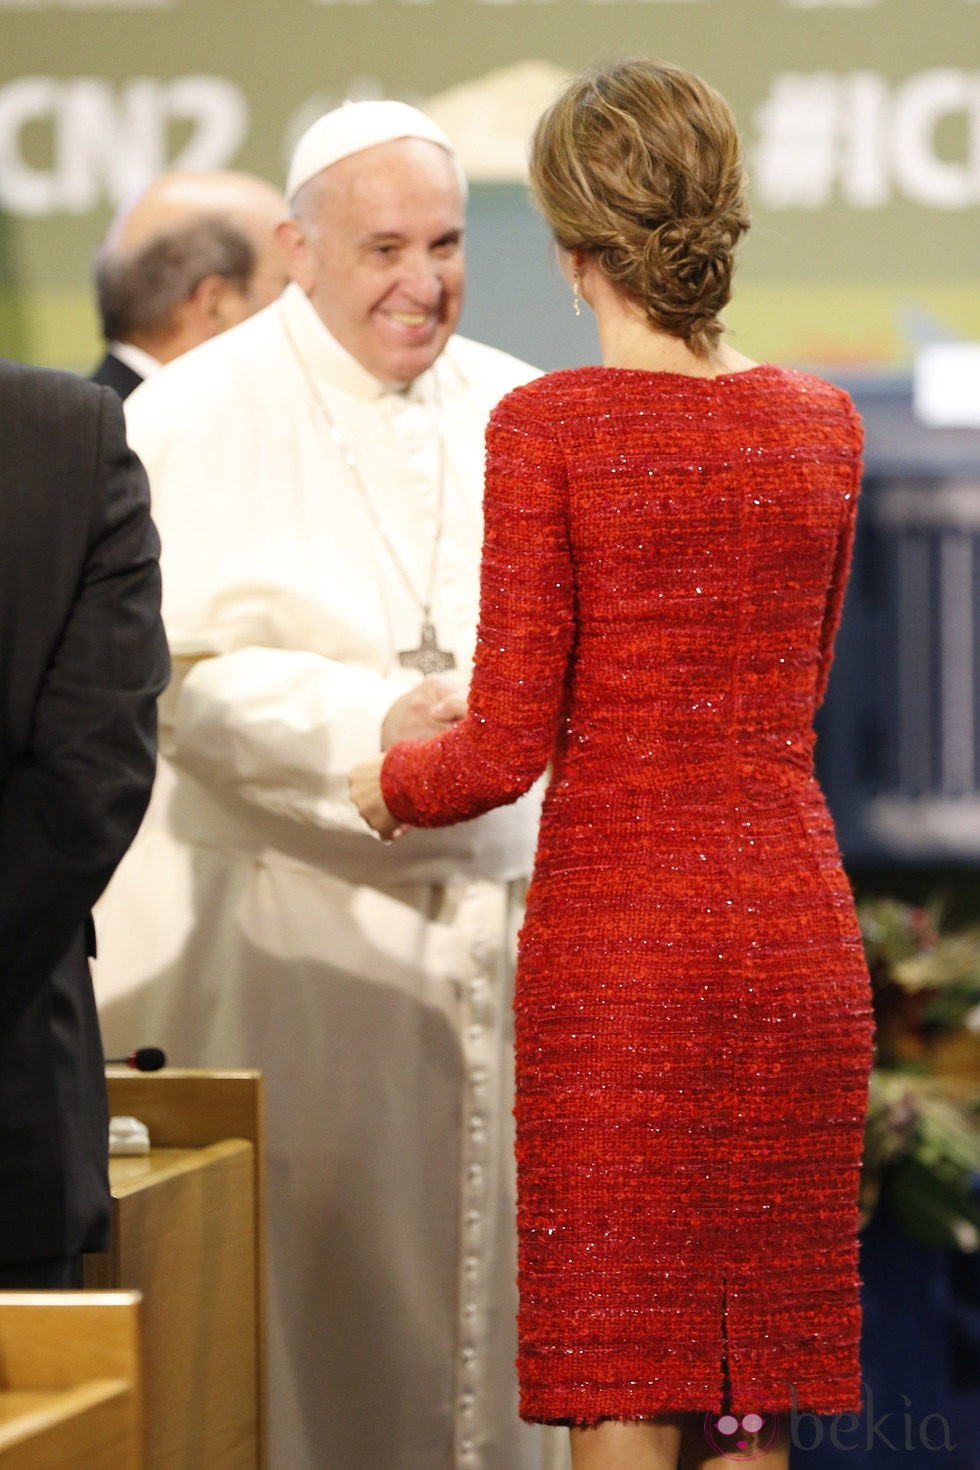 La Reina Letizia saluda al Papa Francisco en la Conferencia sobre Nutrición de la FAO